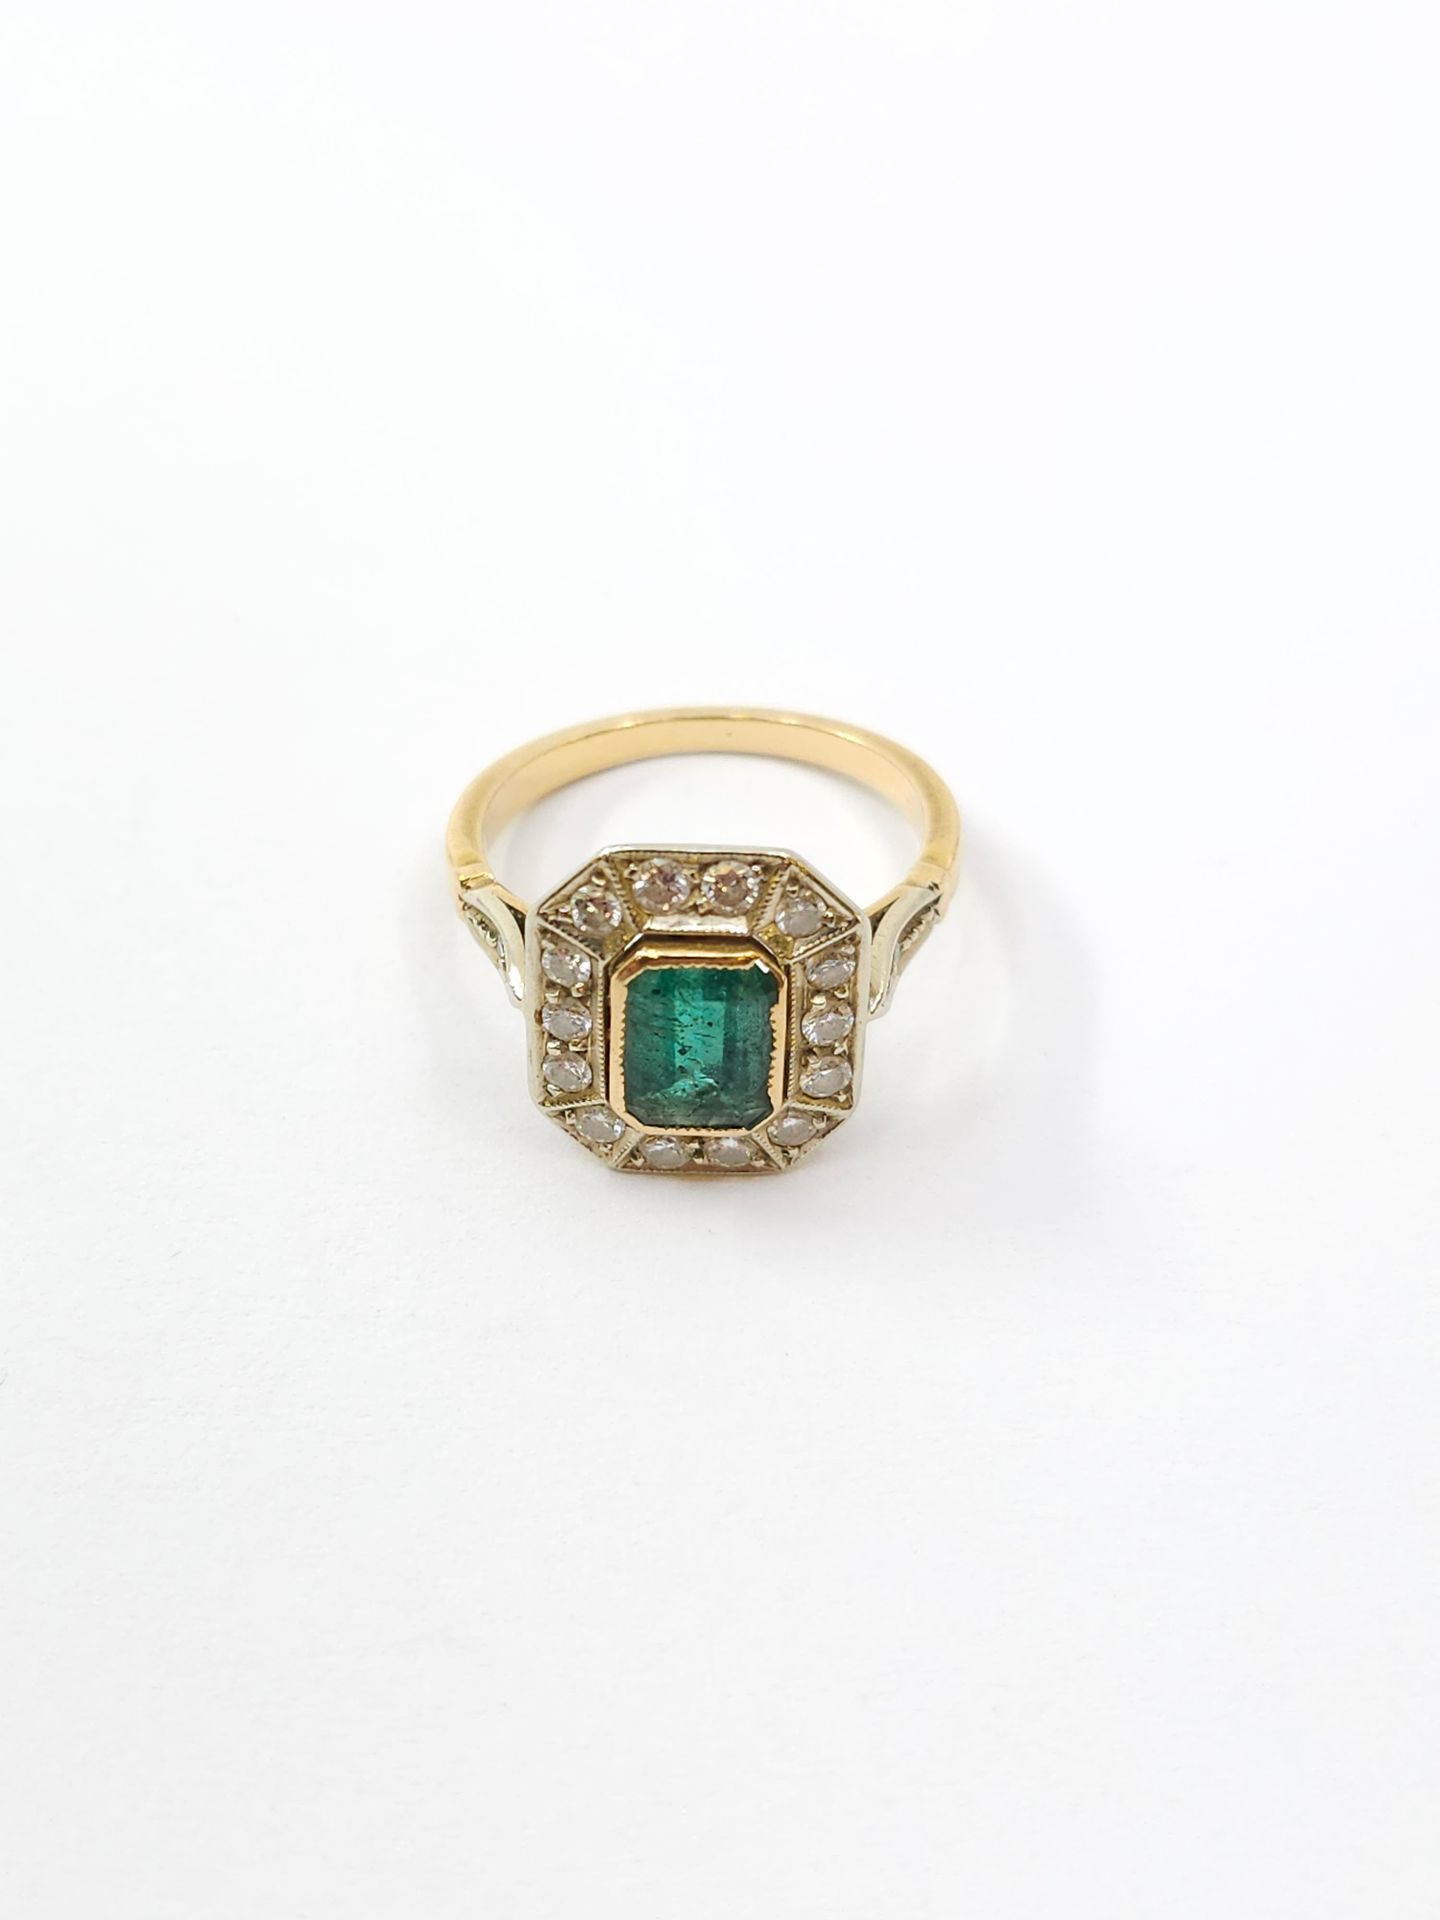 Null 750° 金双色戒指，镶嵌一颗密镶祖母绿（破碎），周围镶嵌钻石 
毛重：3.9 克
TDD 53.5